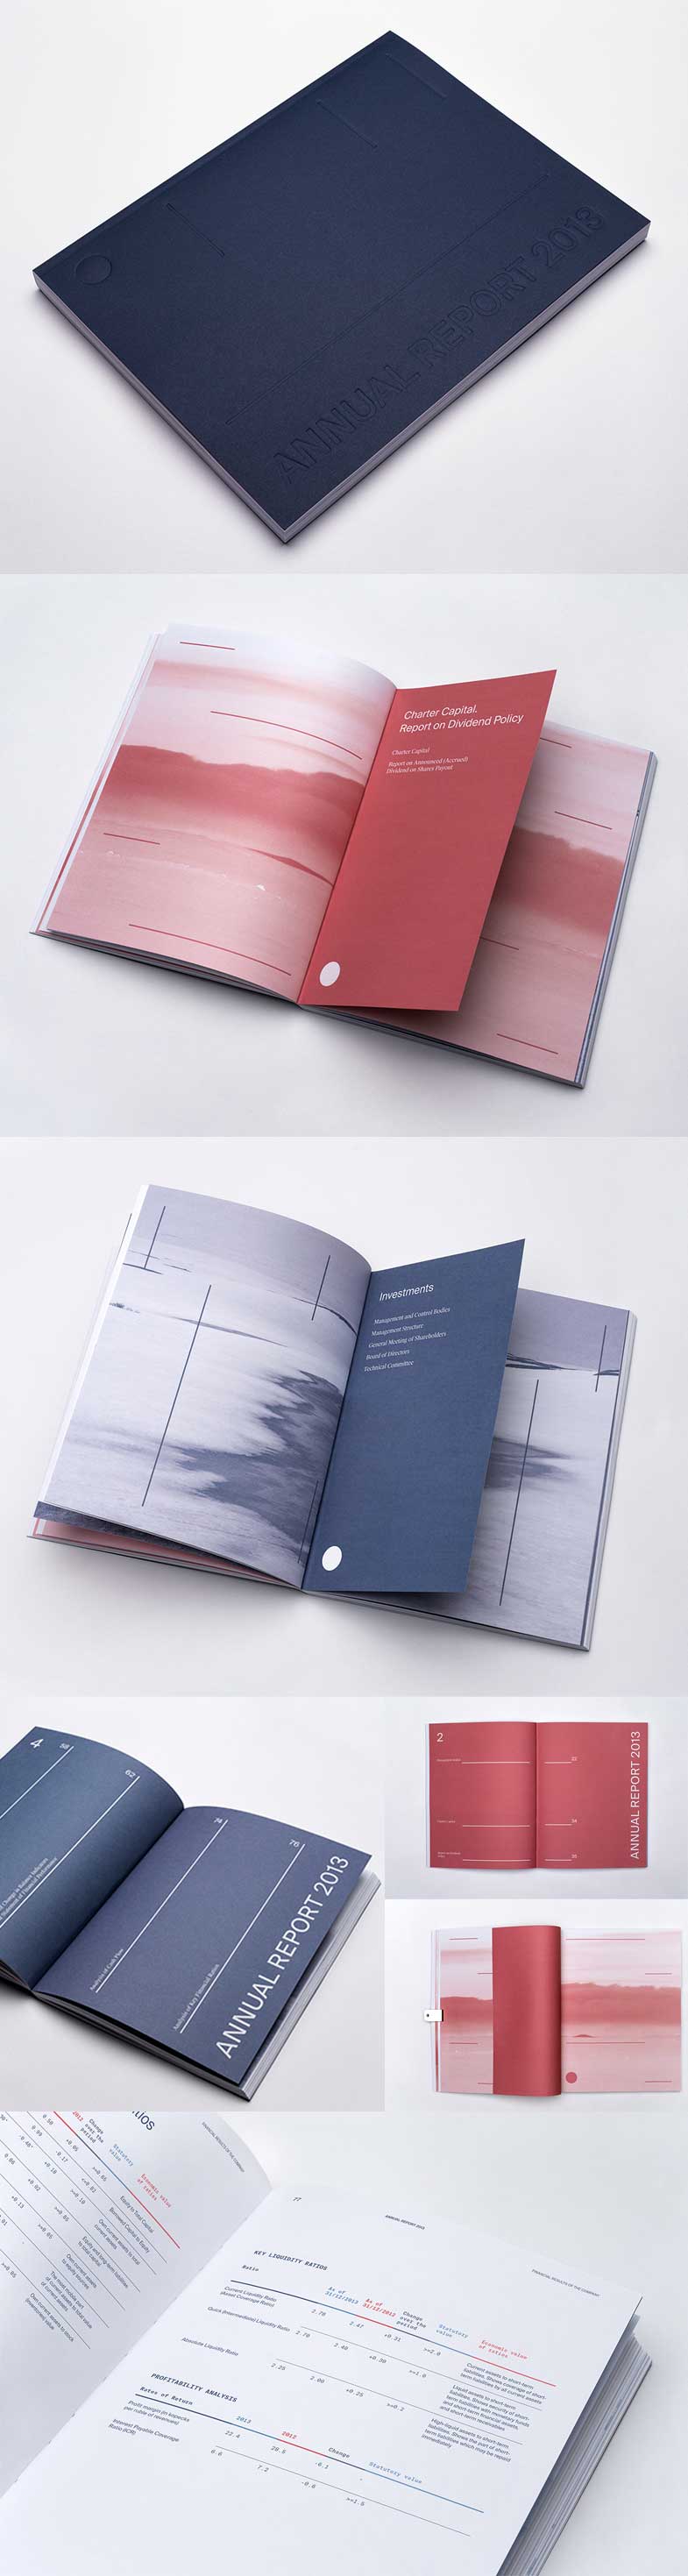 10个精美的彩色年报画册设计